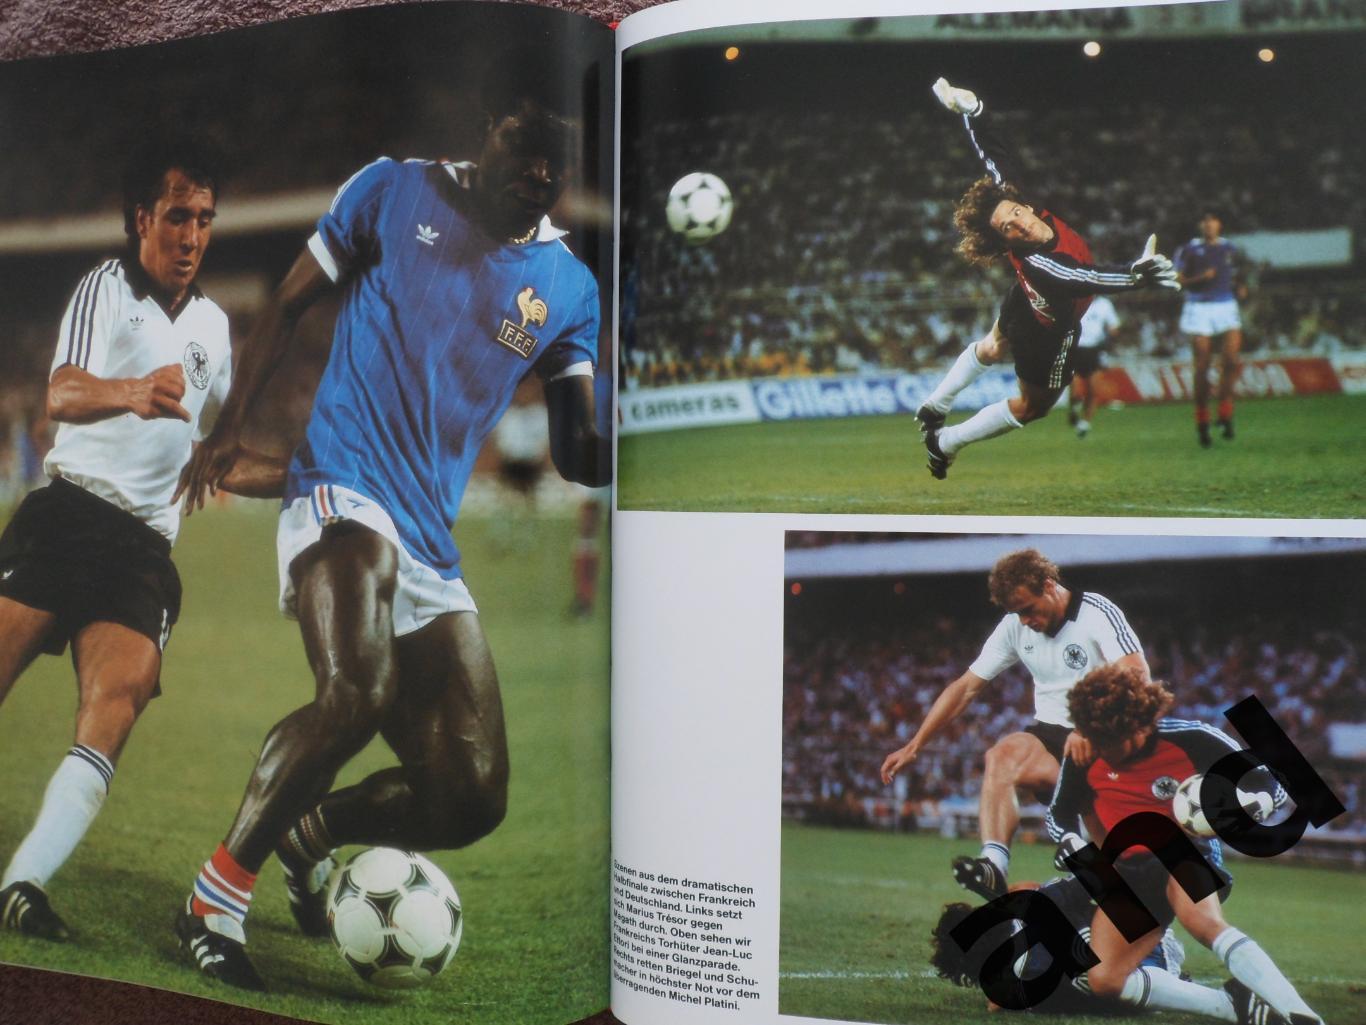 фотоальбом - Чемпионат мира по футболу 1982 г 3